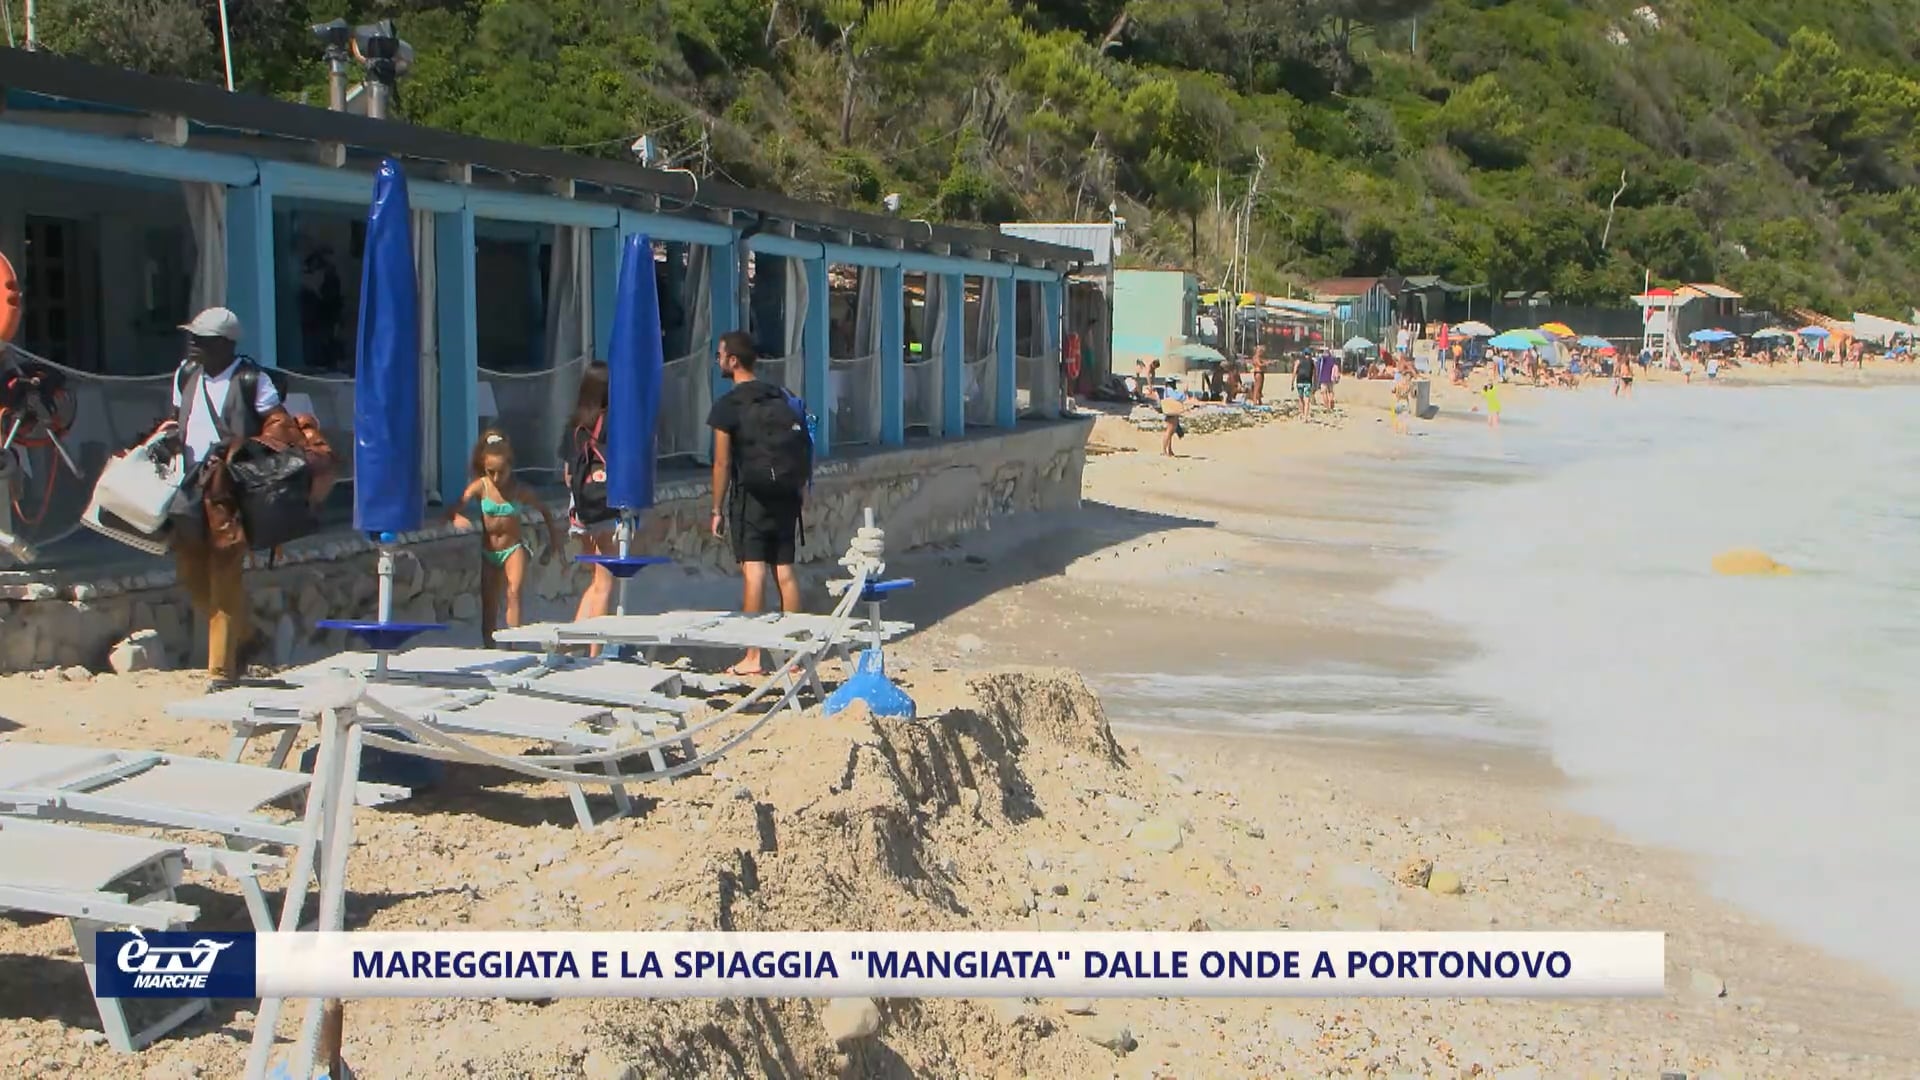 La burrasca e le mareggiate, una fetta di spiaggia a Portonovo mangiata dalle onde - VIDEO